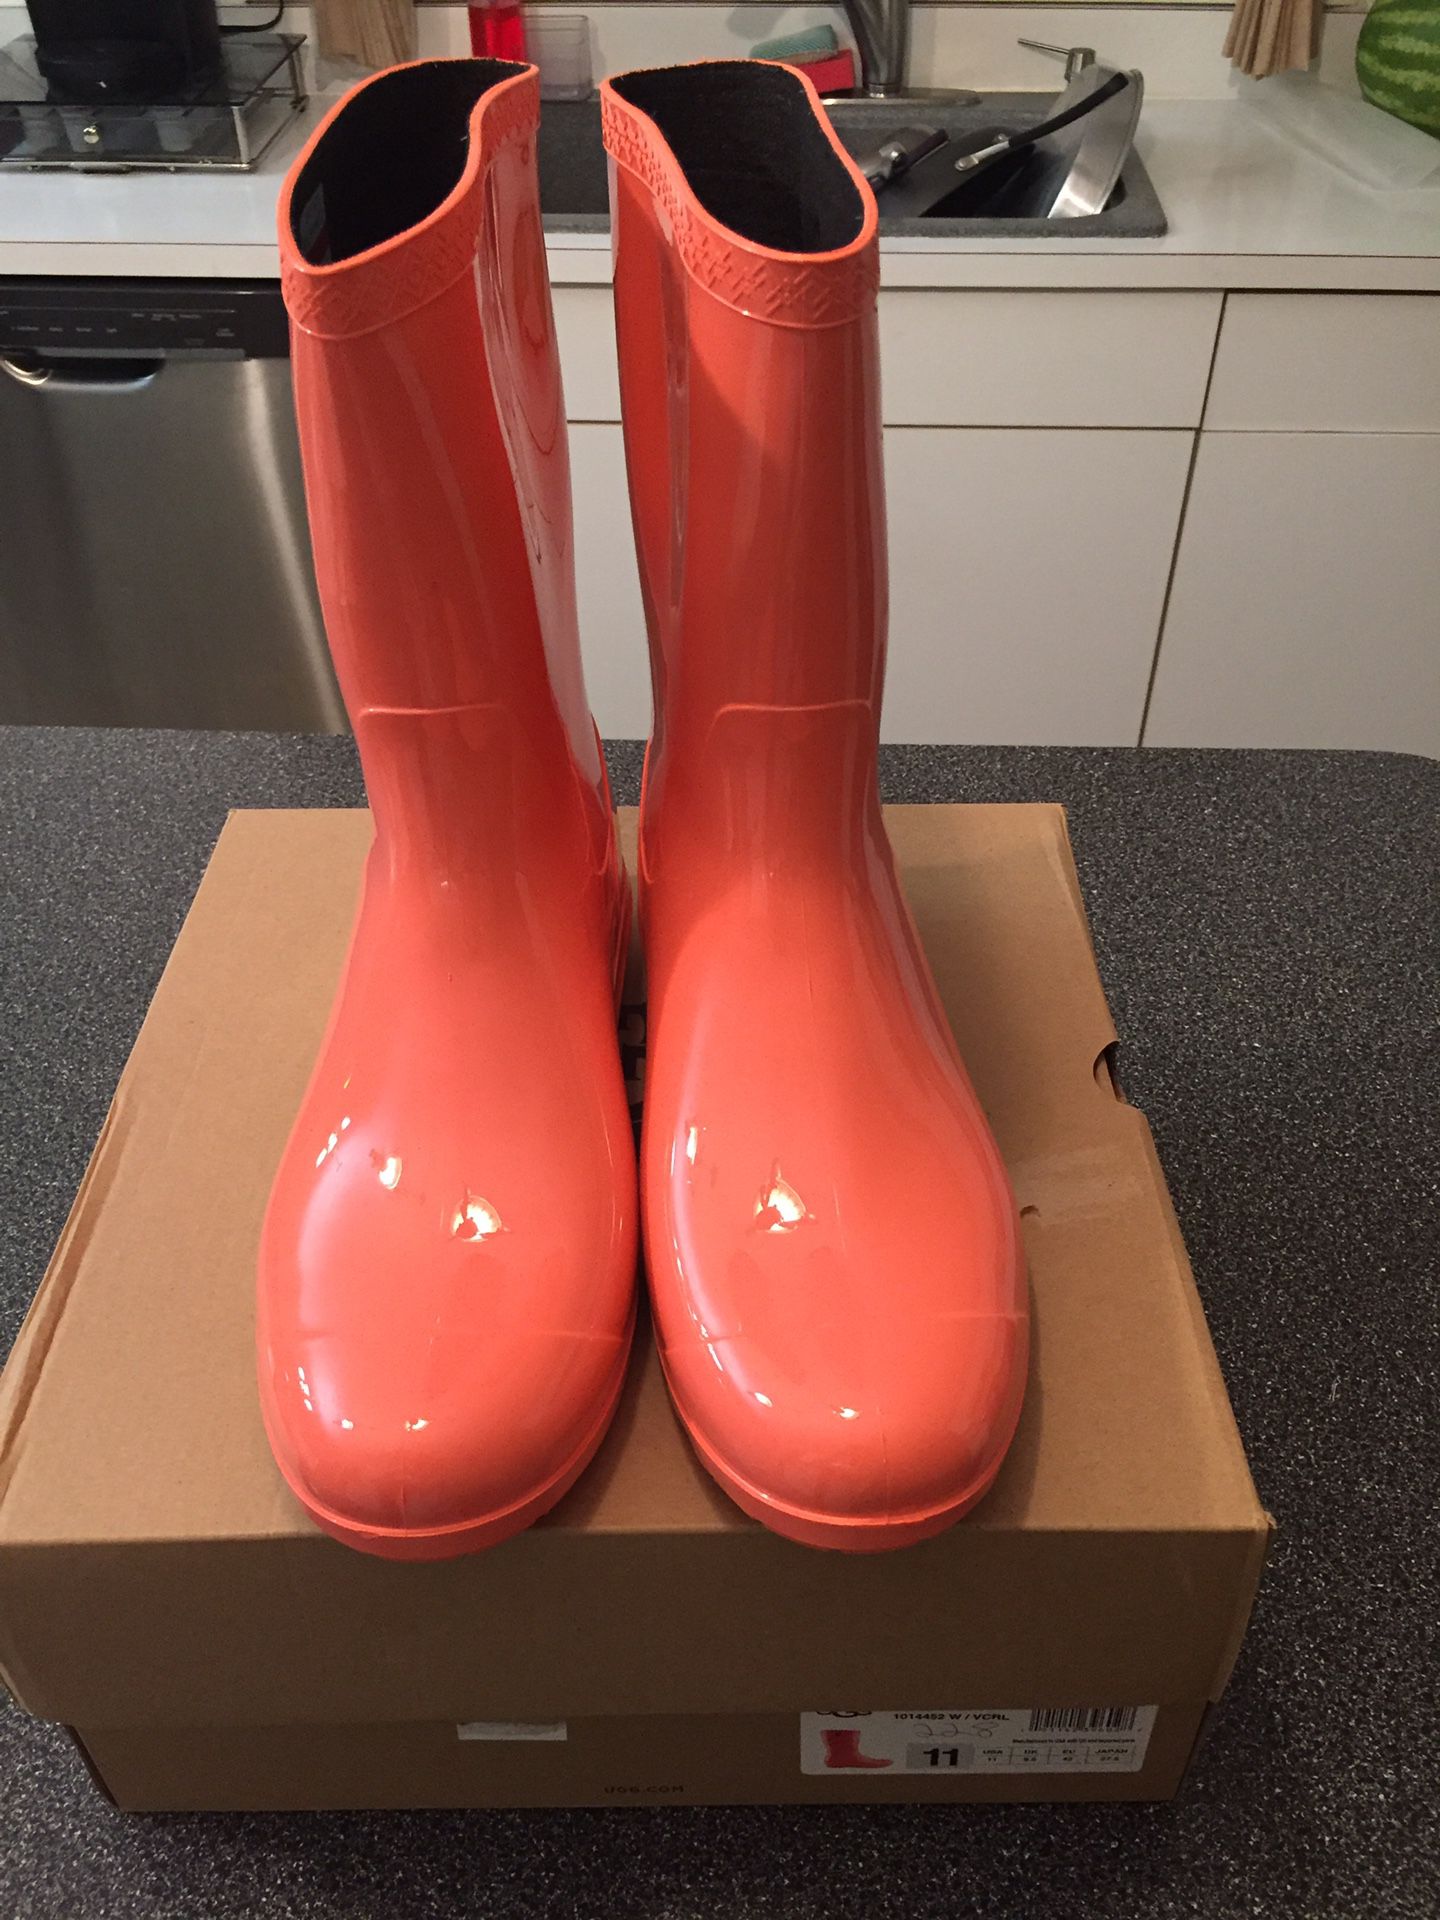 UGG new rain boots